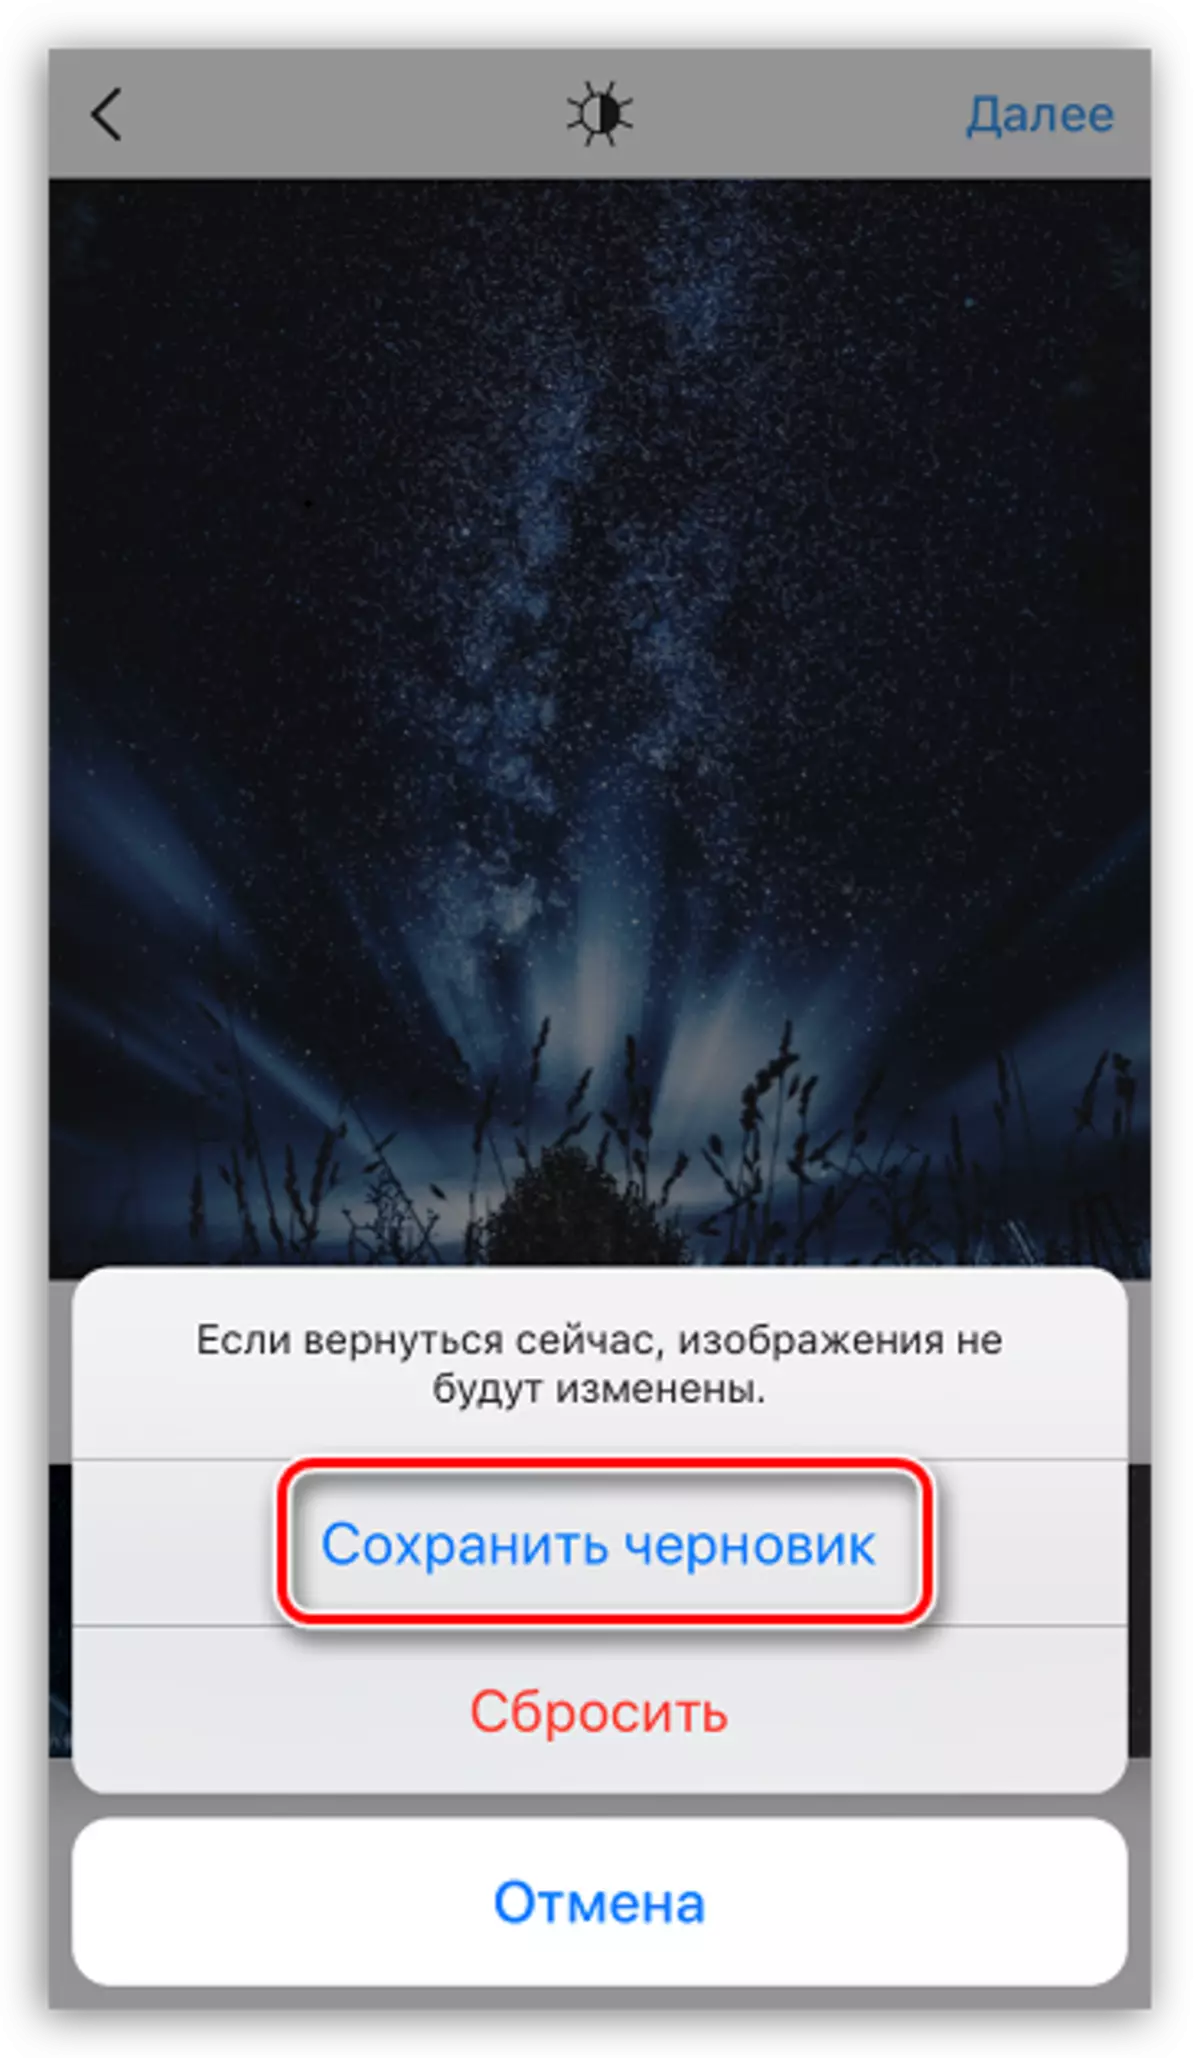 הצלת פרסום לעריכה ב Chernovik ב Instagram